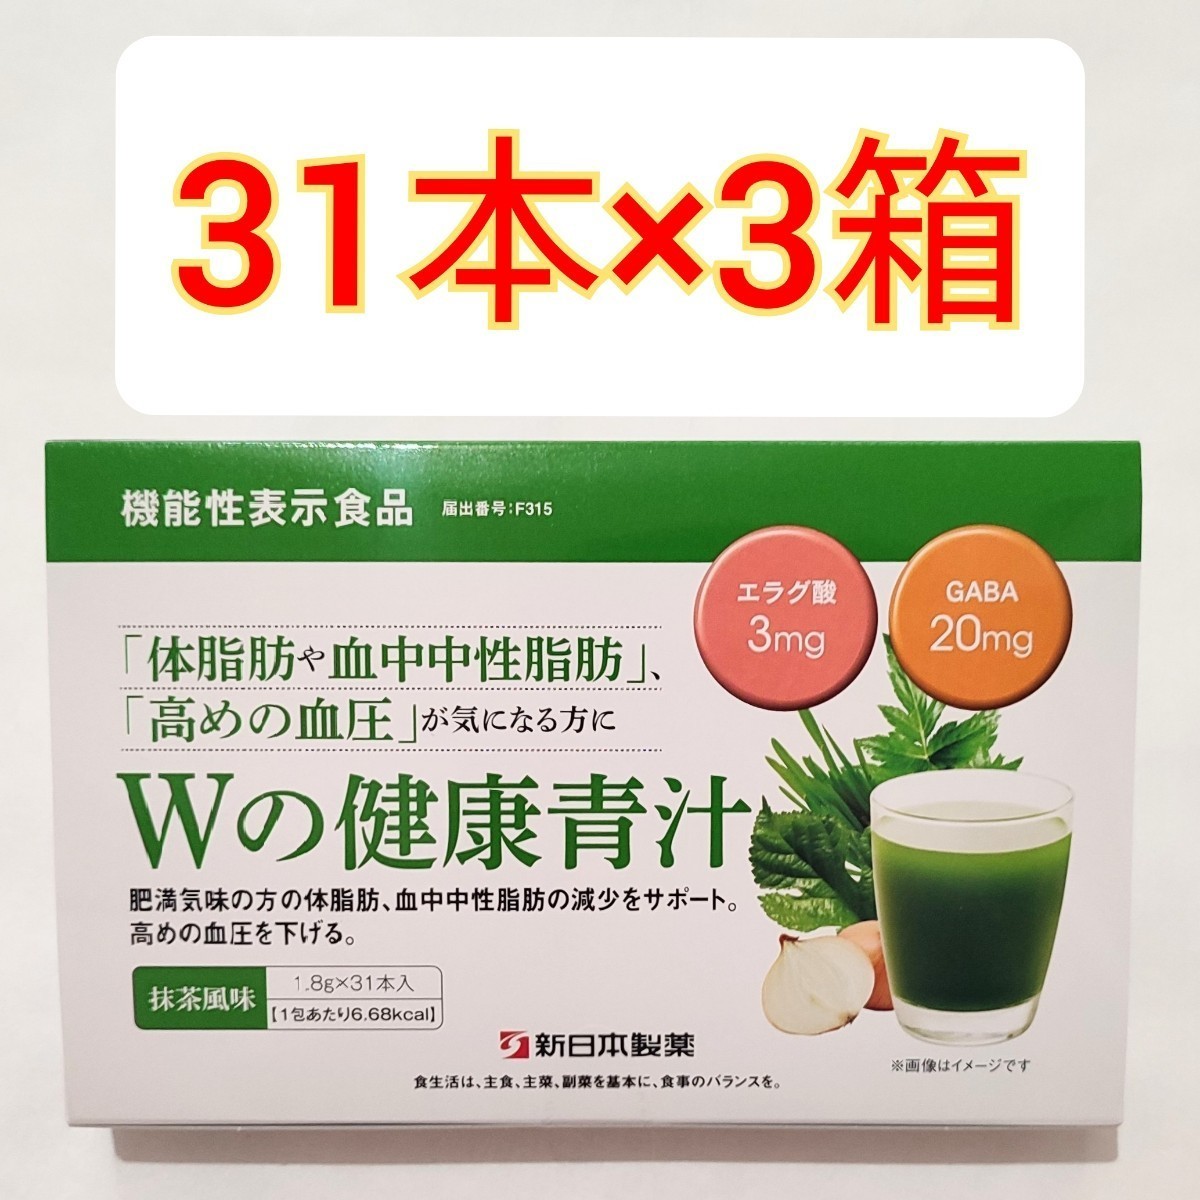 新日本製薬 Wの健康青汁 31包入 2箱セット